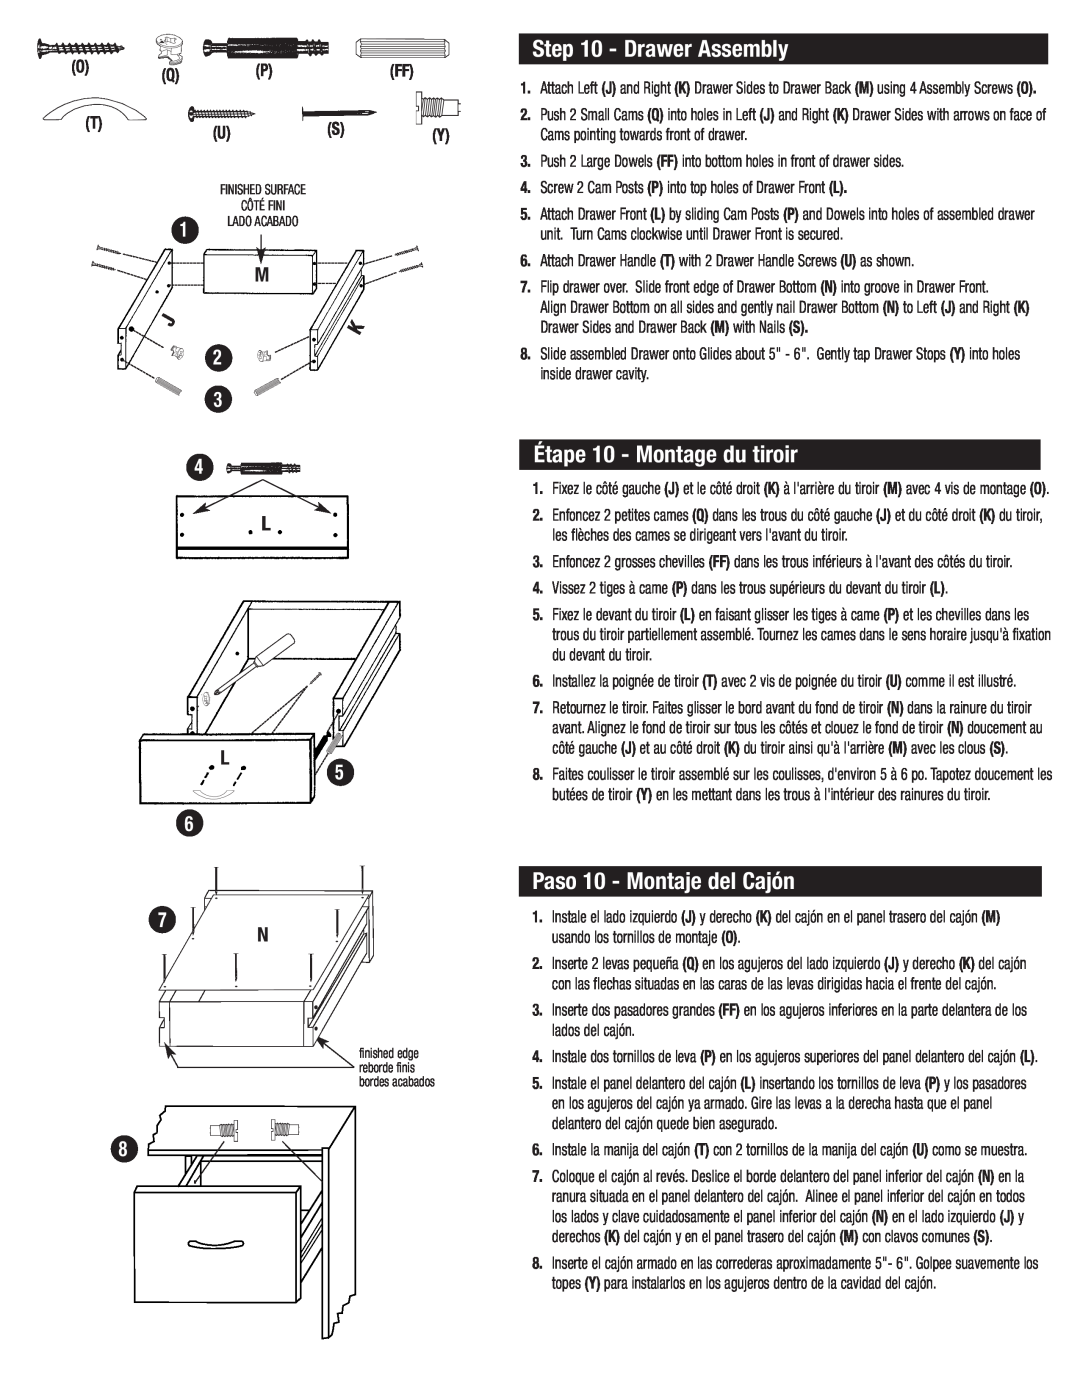 Closet Maid SO2DDW manual Drawer Assembly, Étape 10 - Montage du tiroir, Paso 10 - Montaje del Cajón 